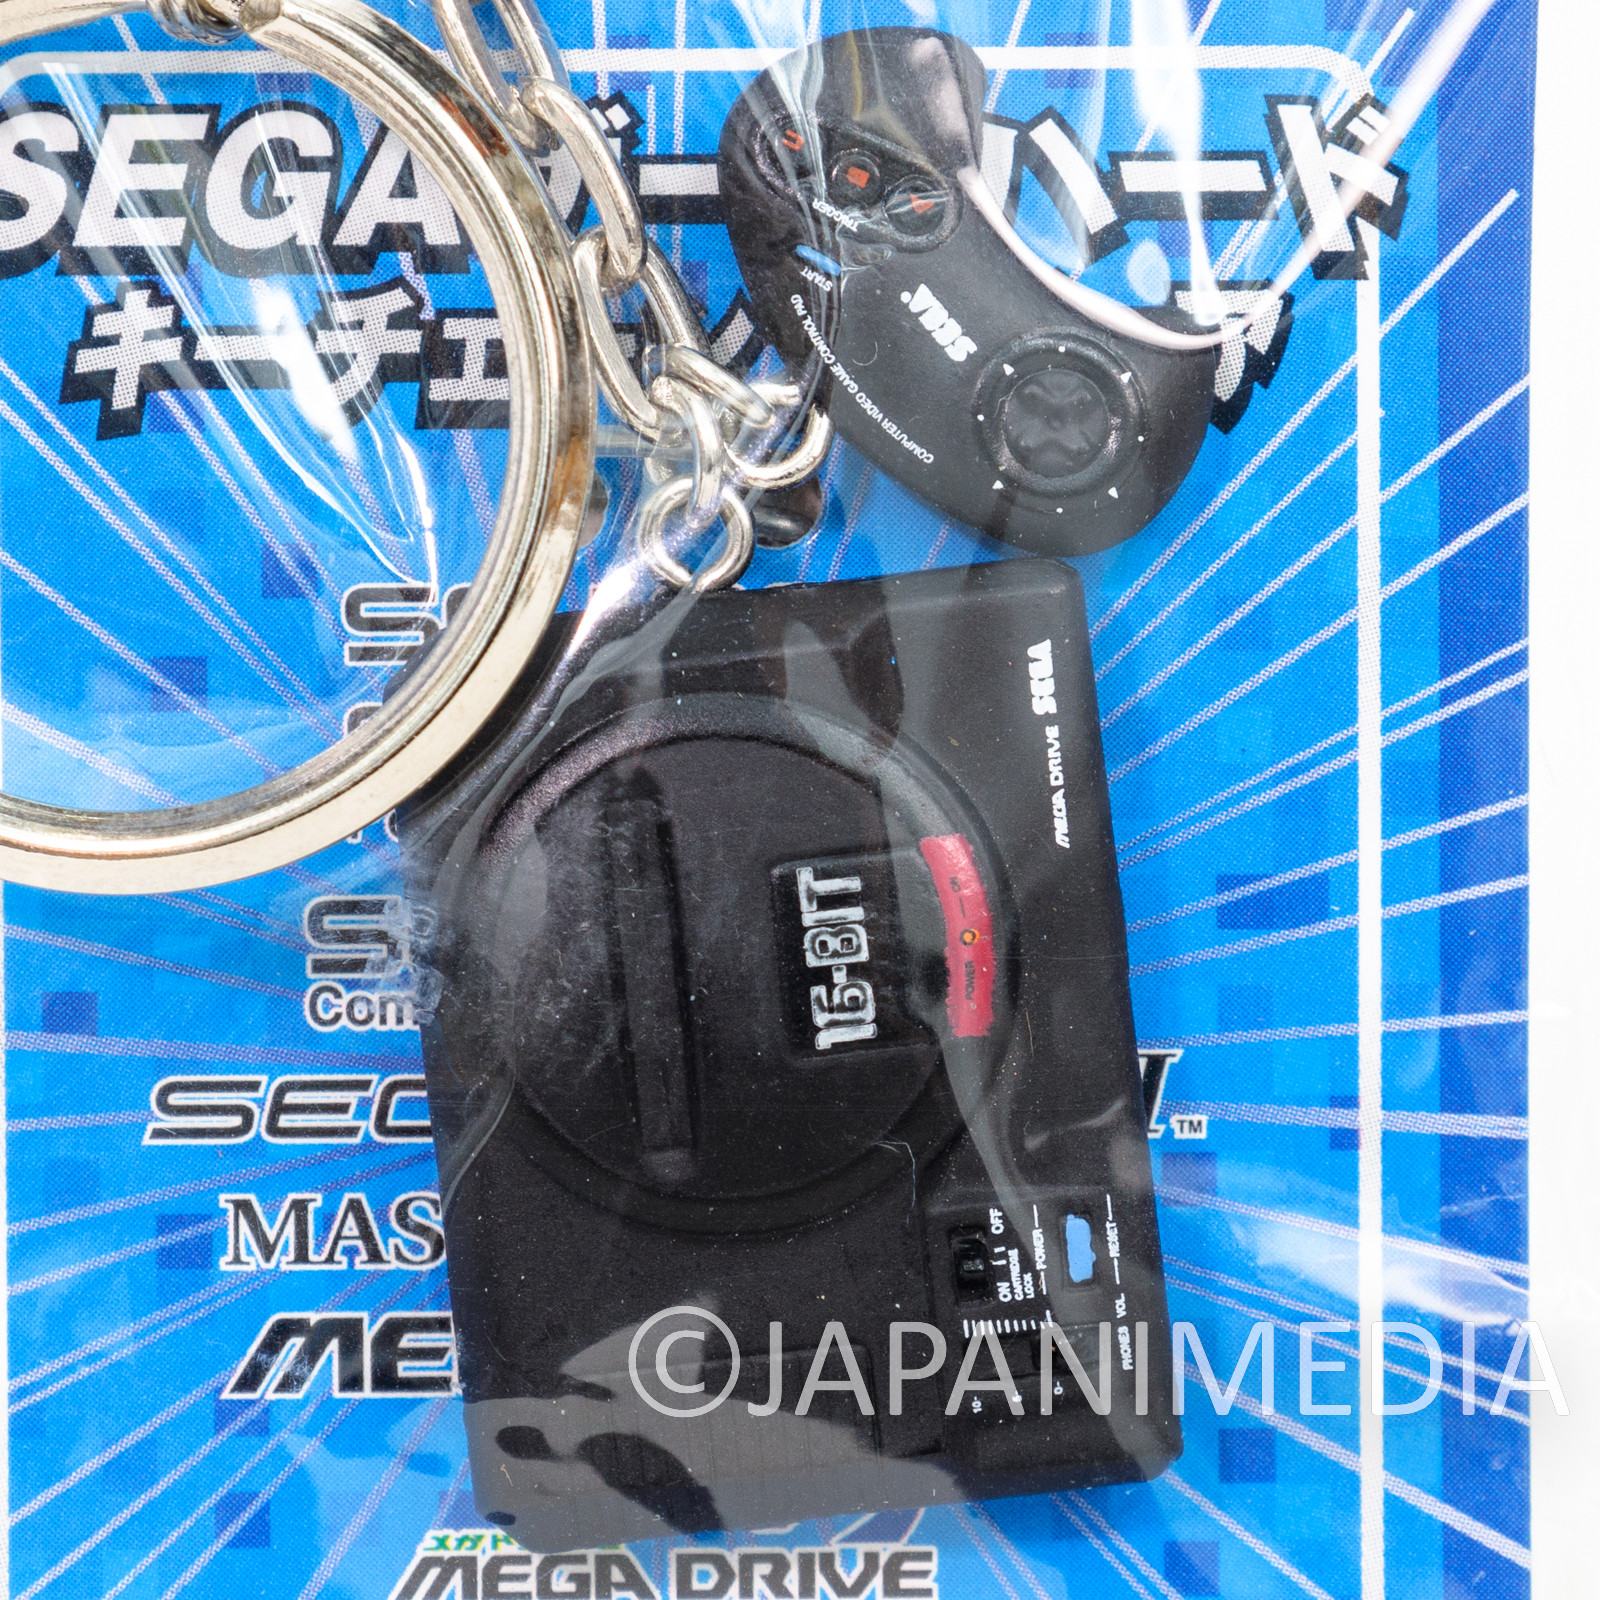 RARE!! SEGA Game Console Miniature Figure Keychain MEGA DRIVE 